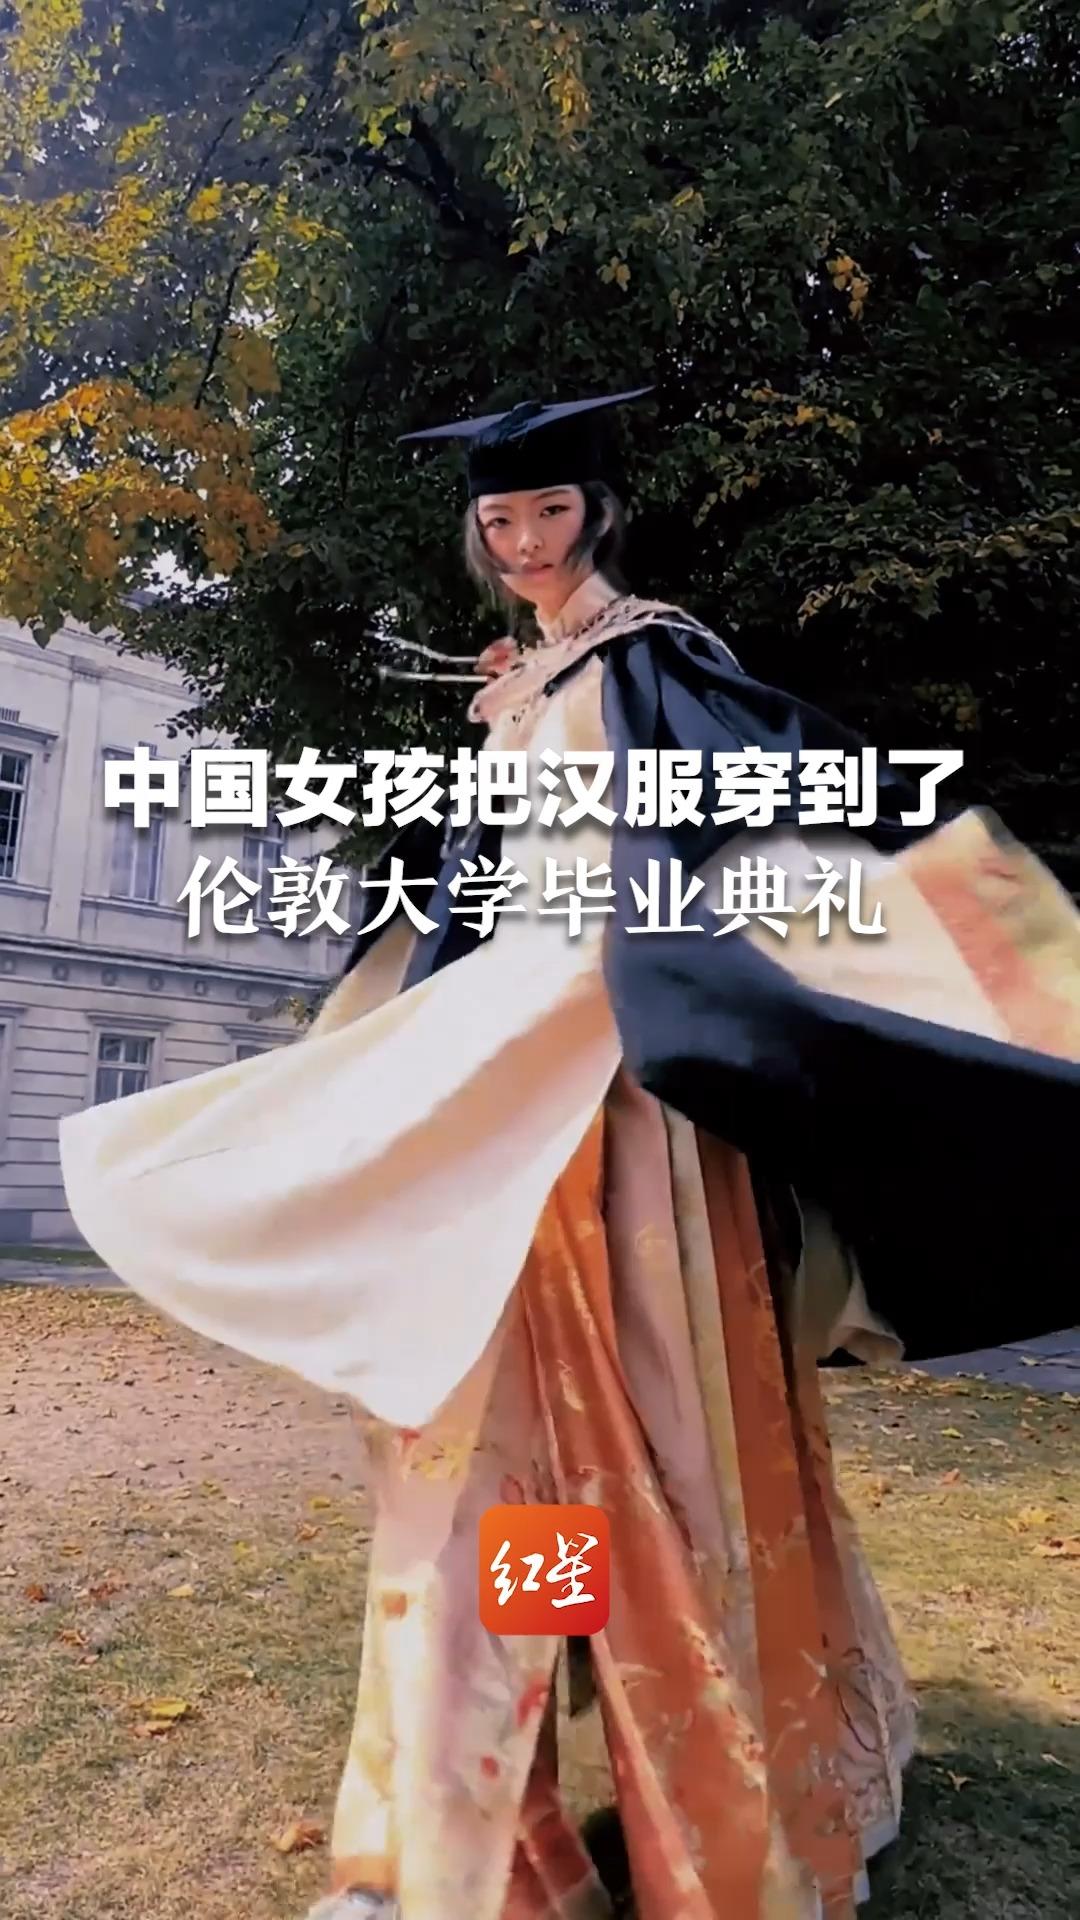 中国女孩把汉服穿去了伦敦大学毕业典礼：“让欧洲看到中国的美”